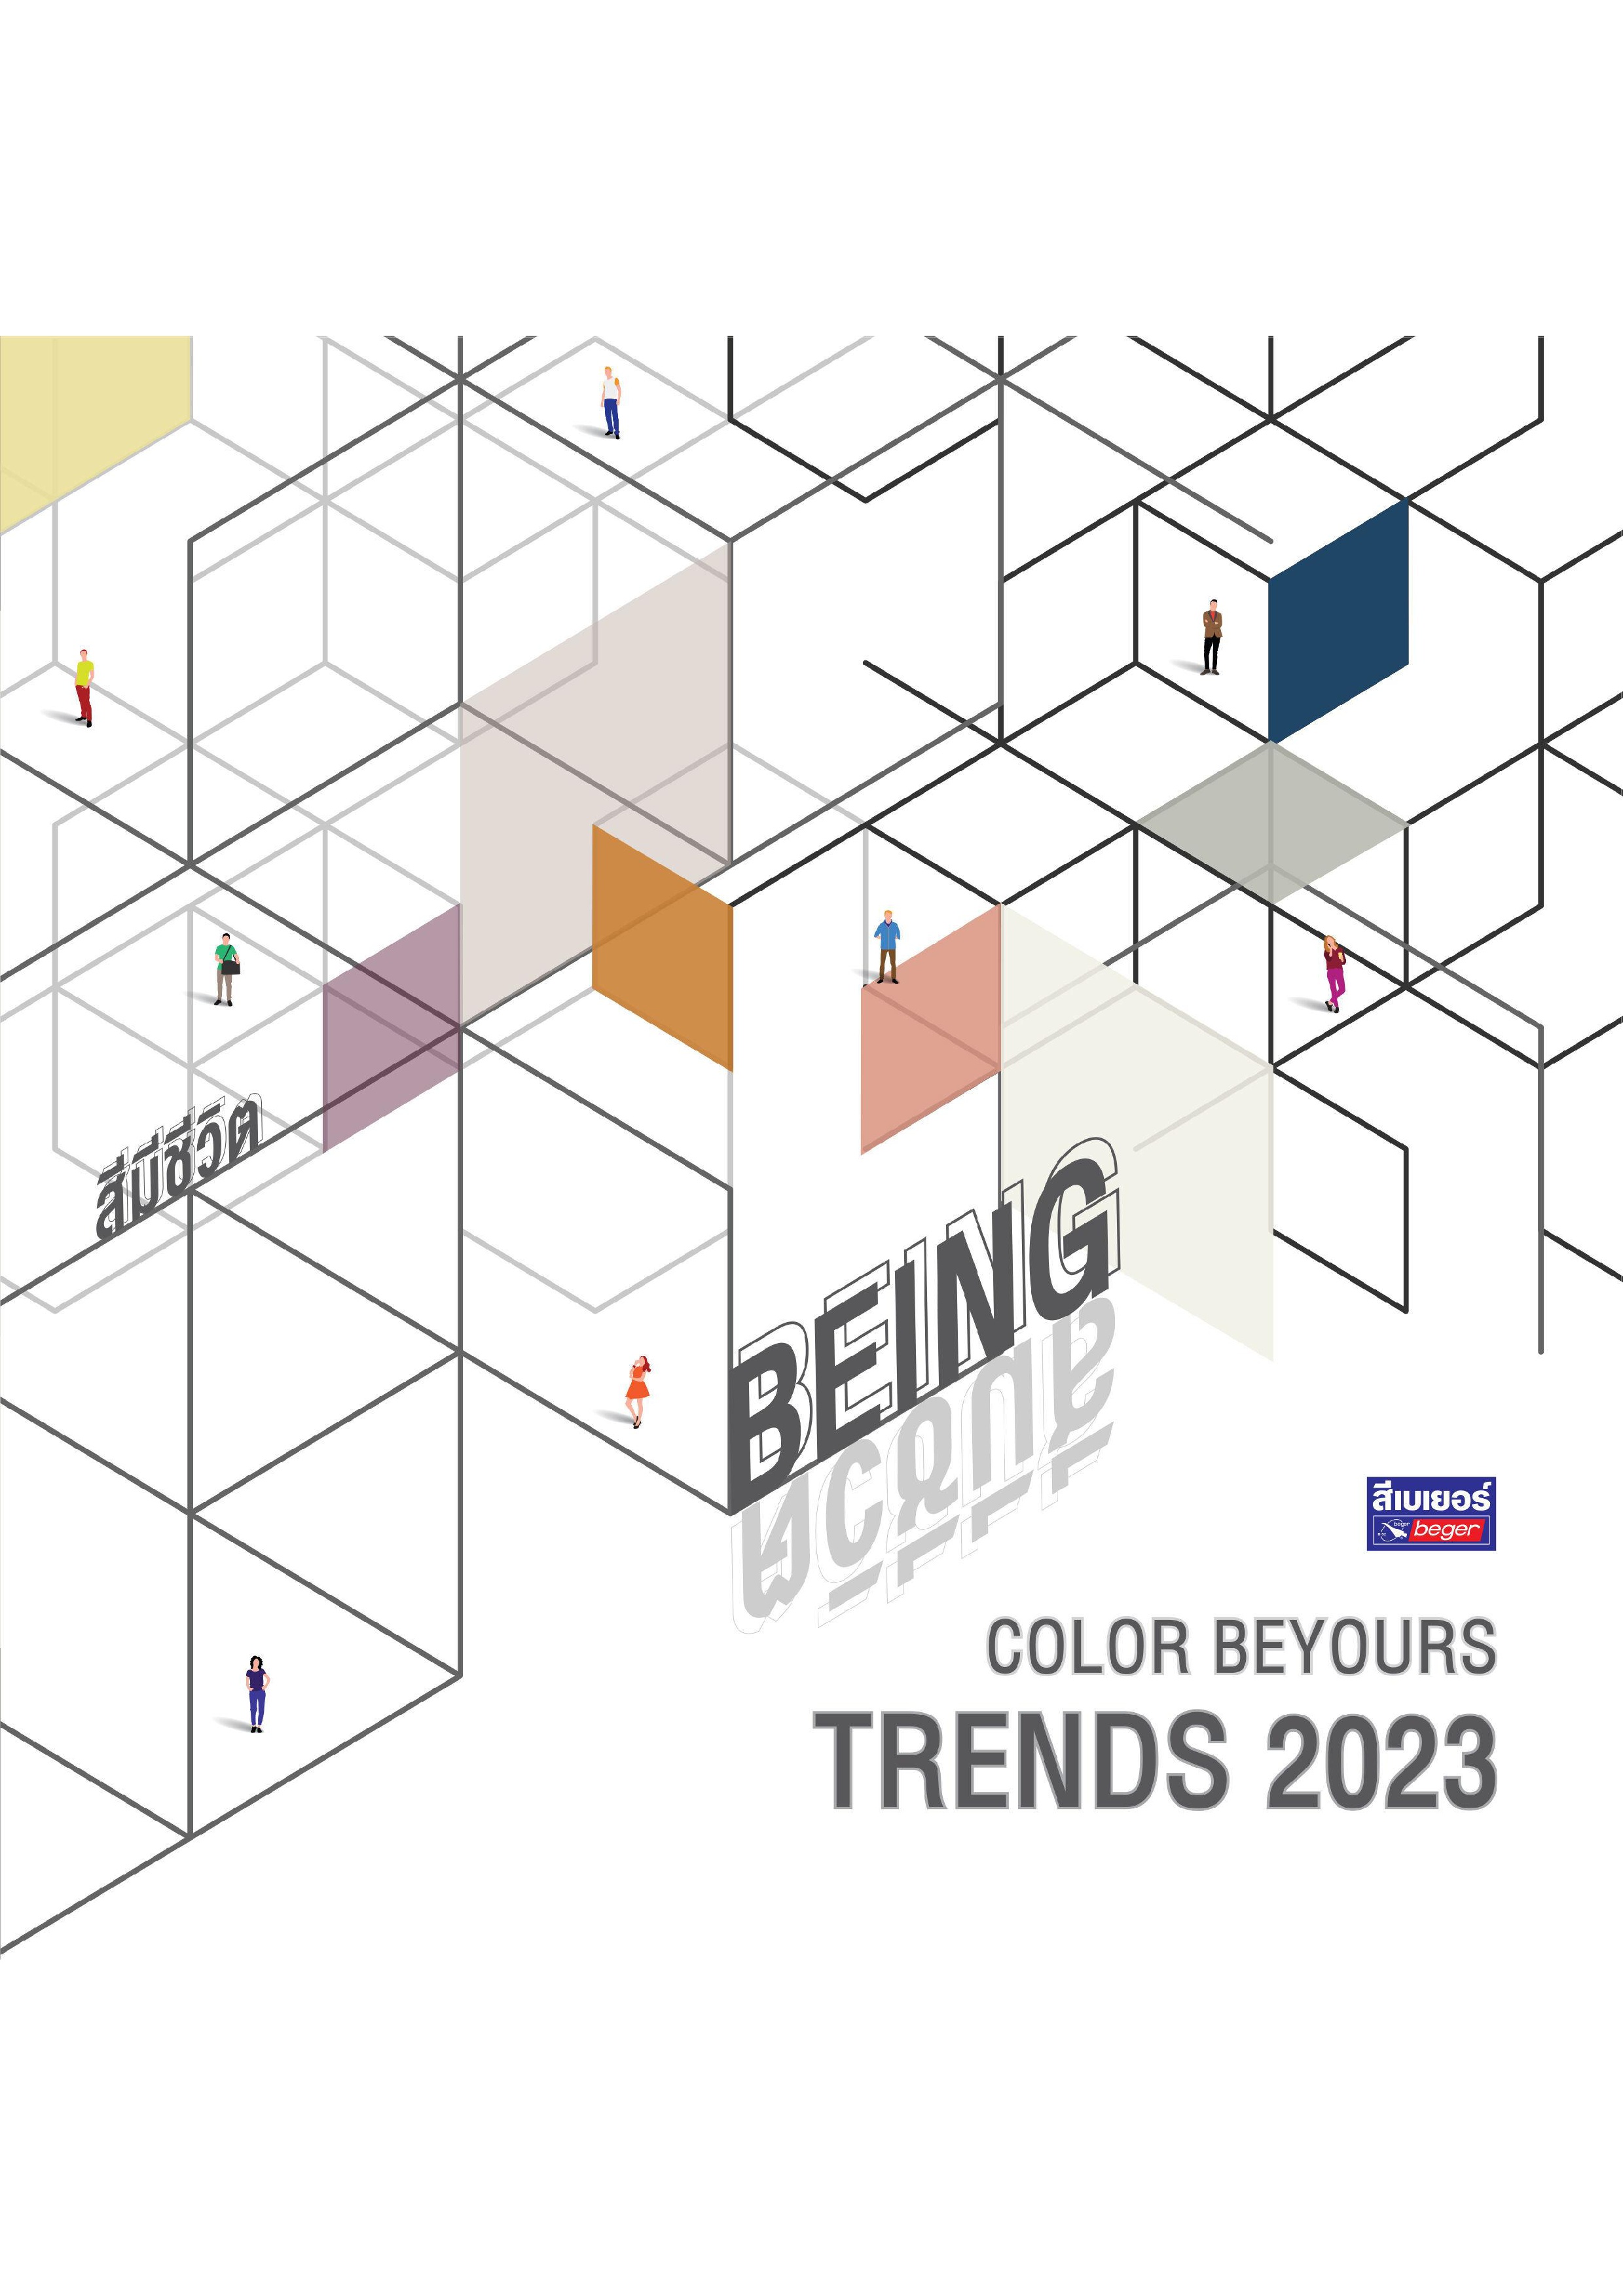 รวมเฉดสีประจำปี 2023 / Beger Color Beyours Trends 2023